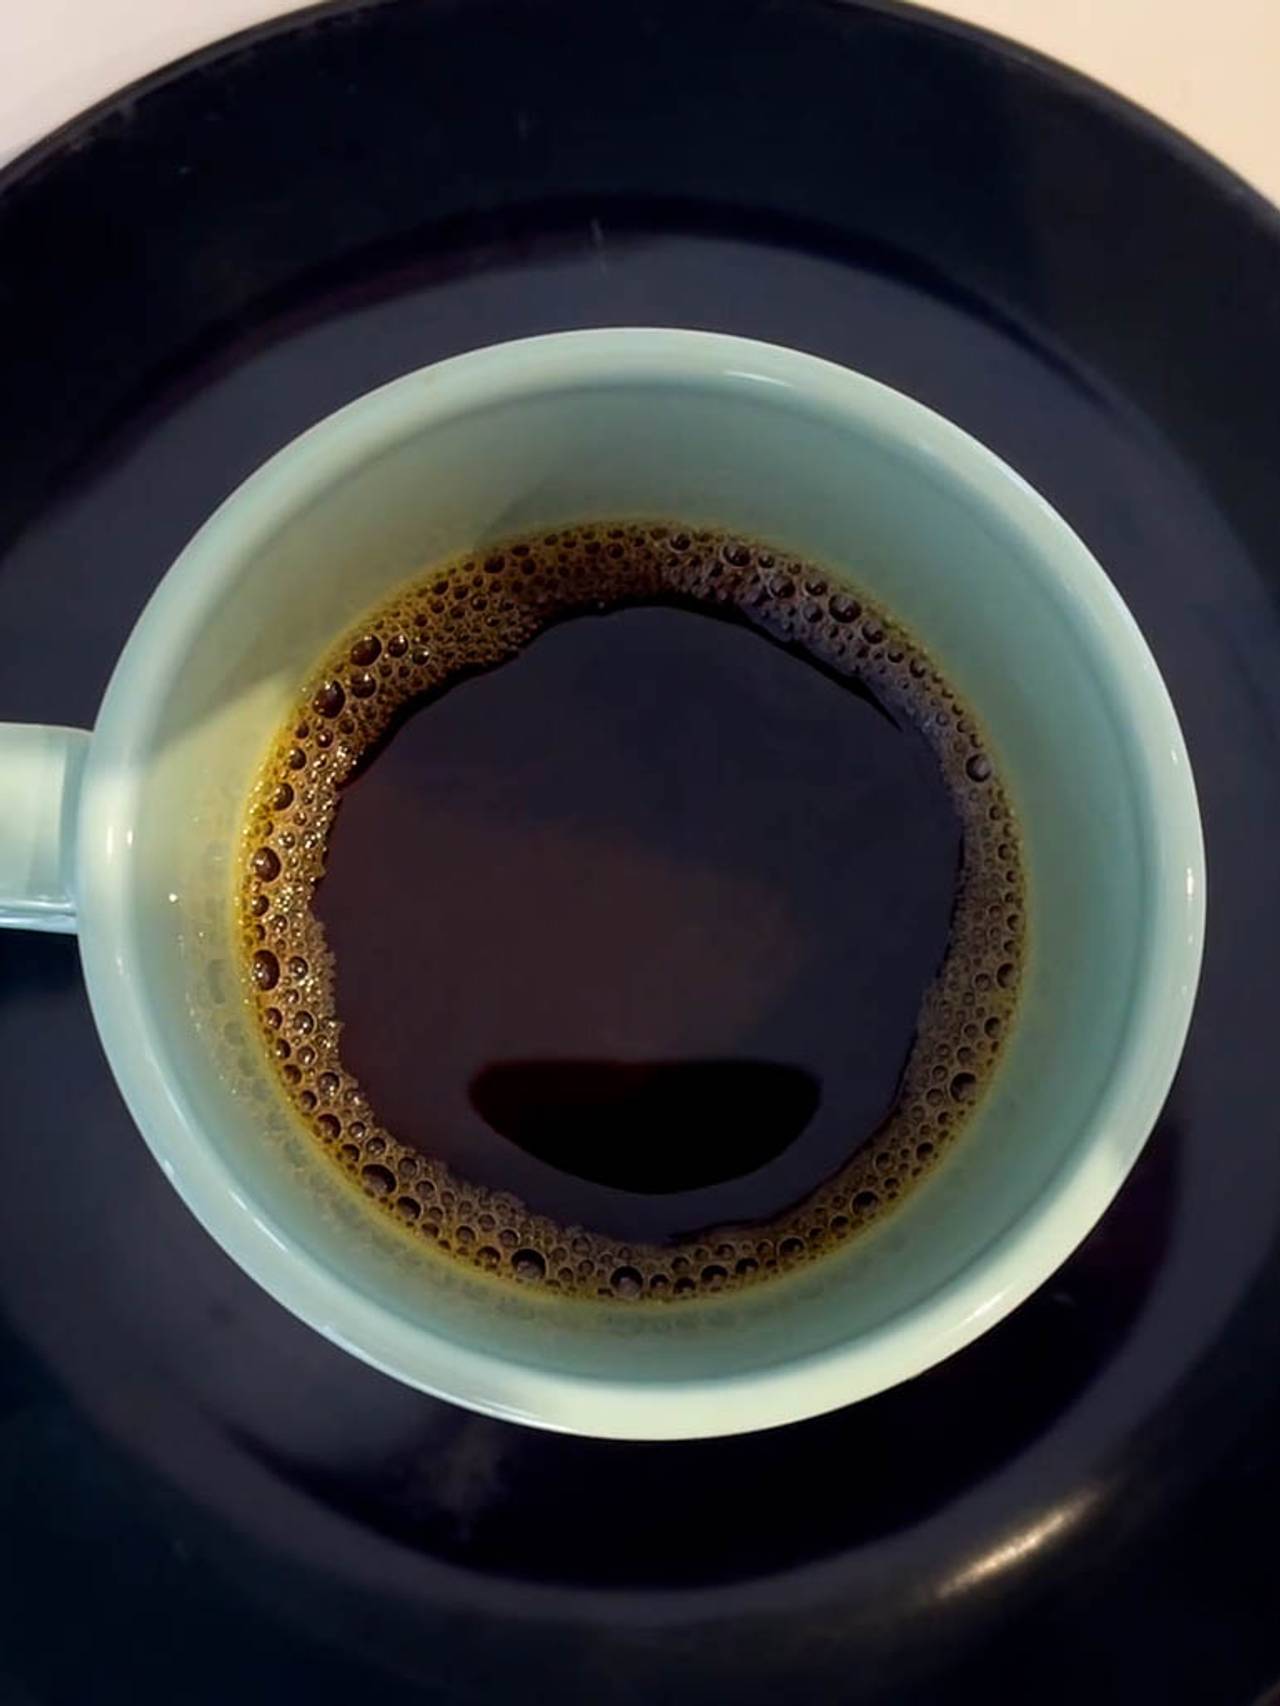 Svart kaffe kan være foretrukket av folk med god hjertehelse.